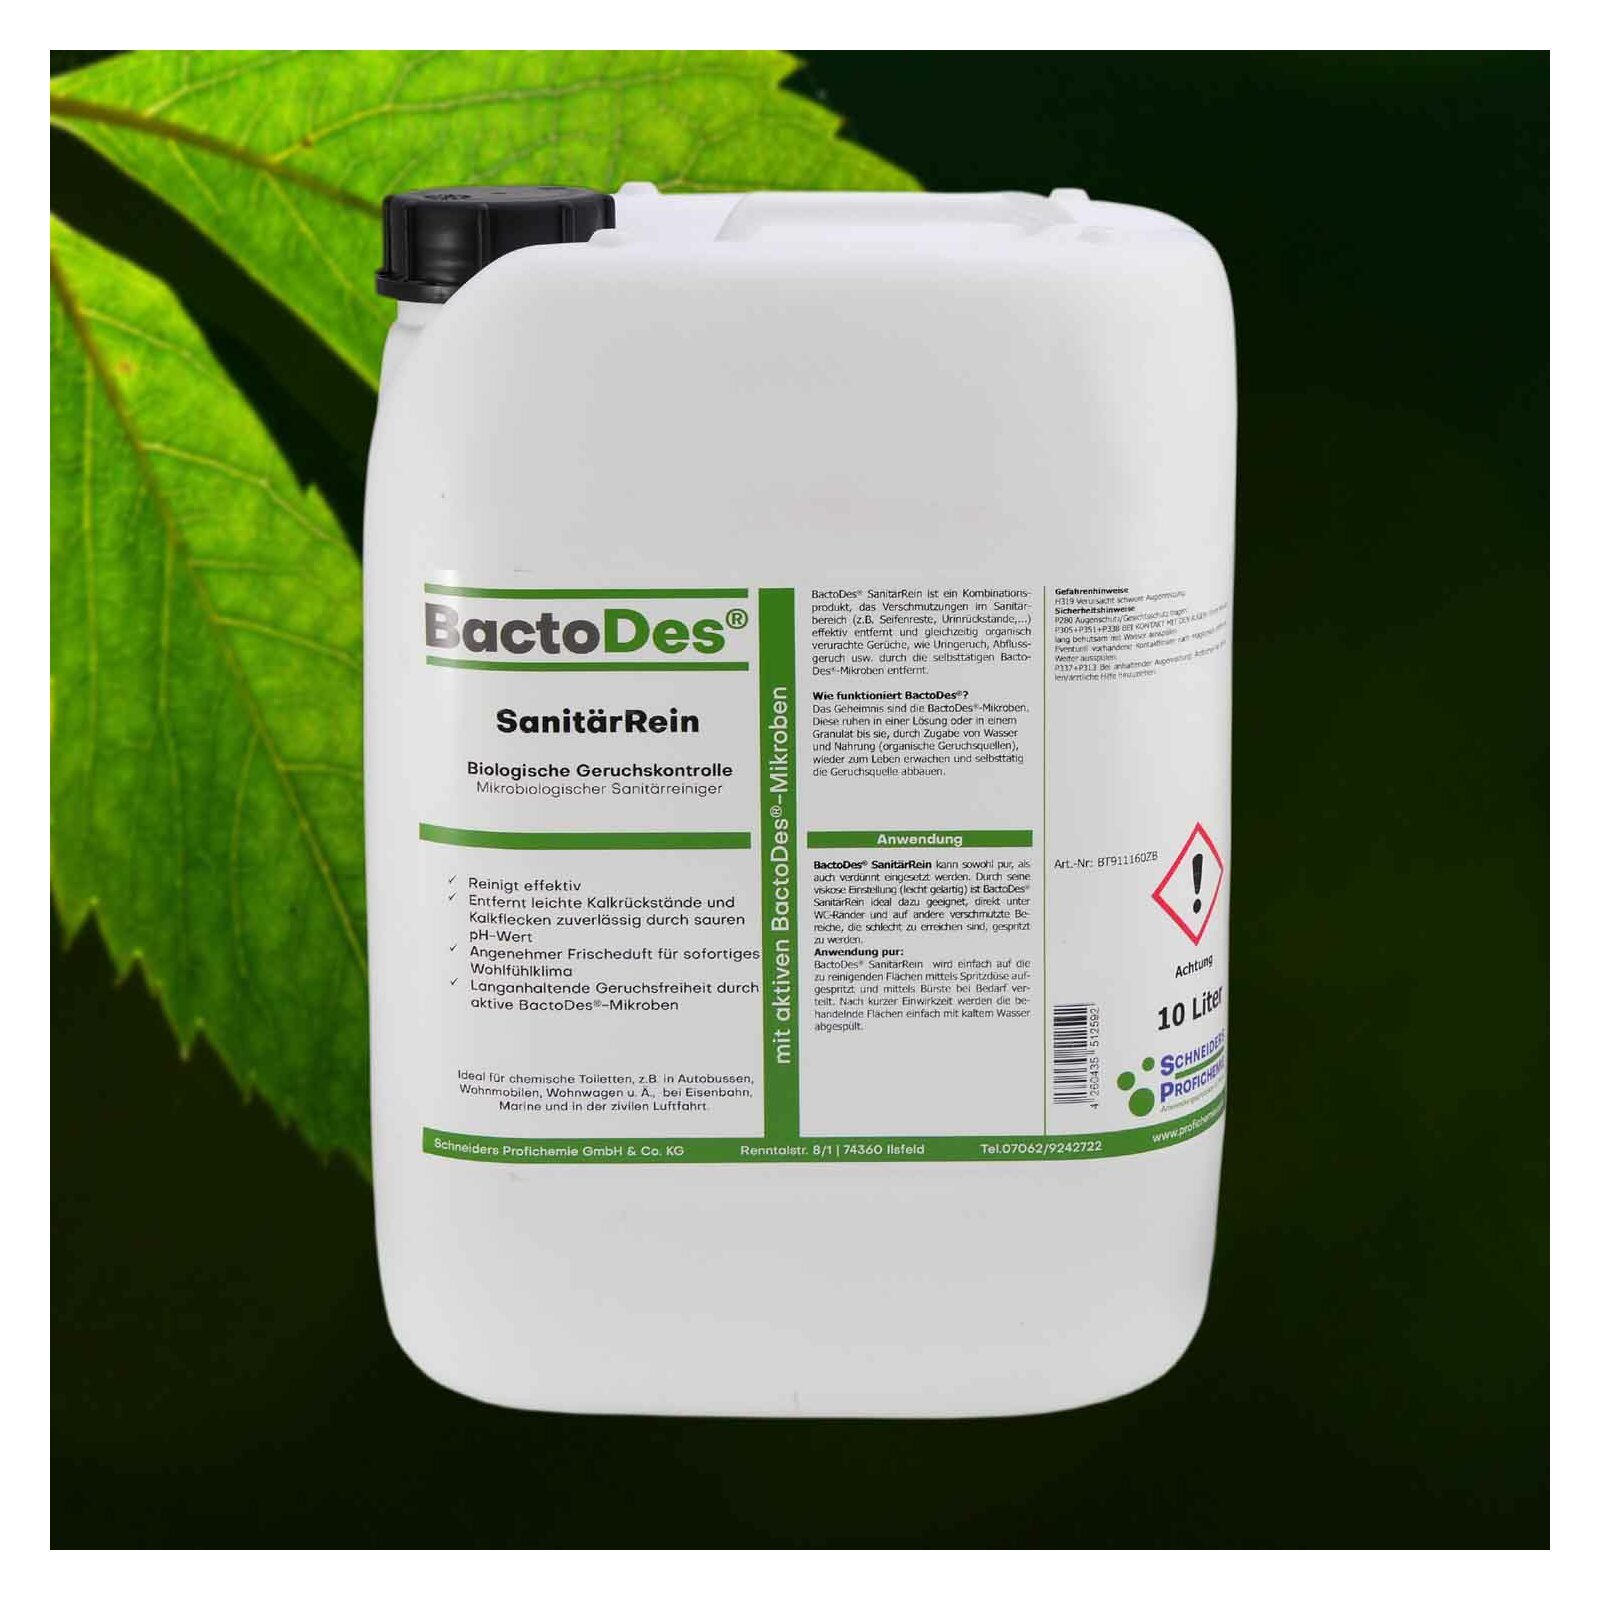 BactoDes(R) SanitrRein  Mikrobiologischer Sanitrreiniger und Geruchsentferner 10 Liter Kanister 1 Kanister unter BactoDes Clean SanitaerRein